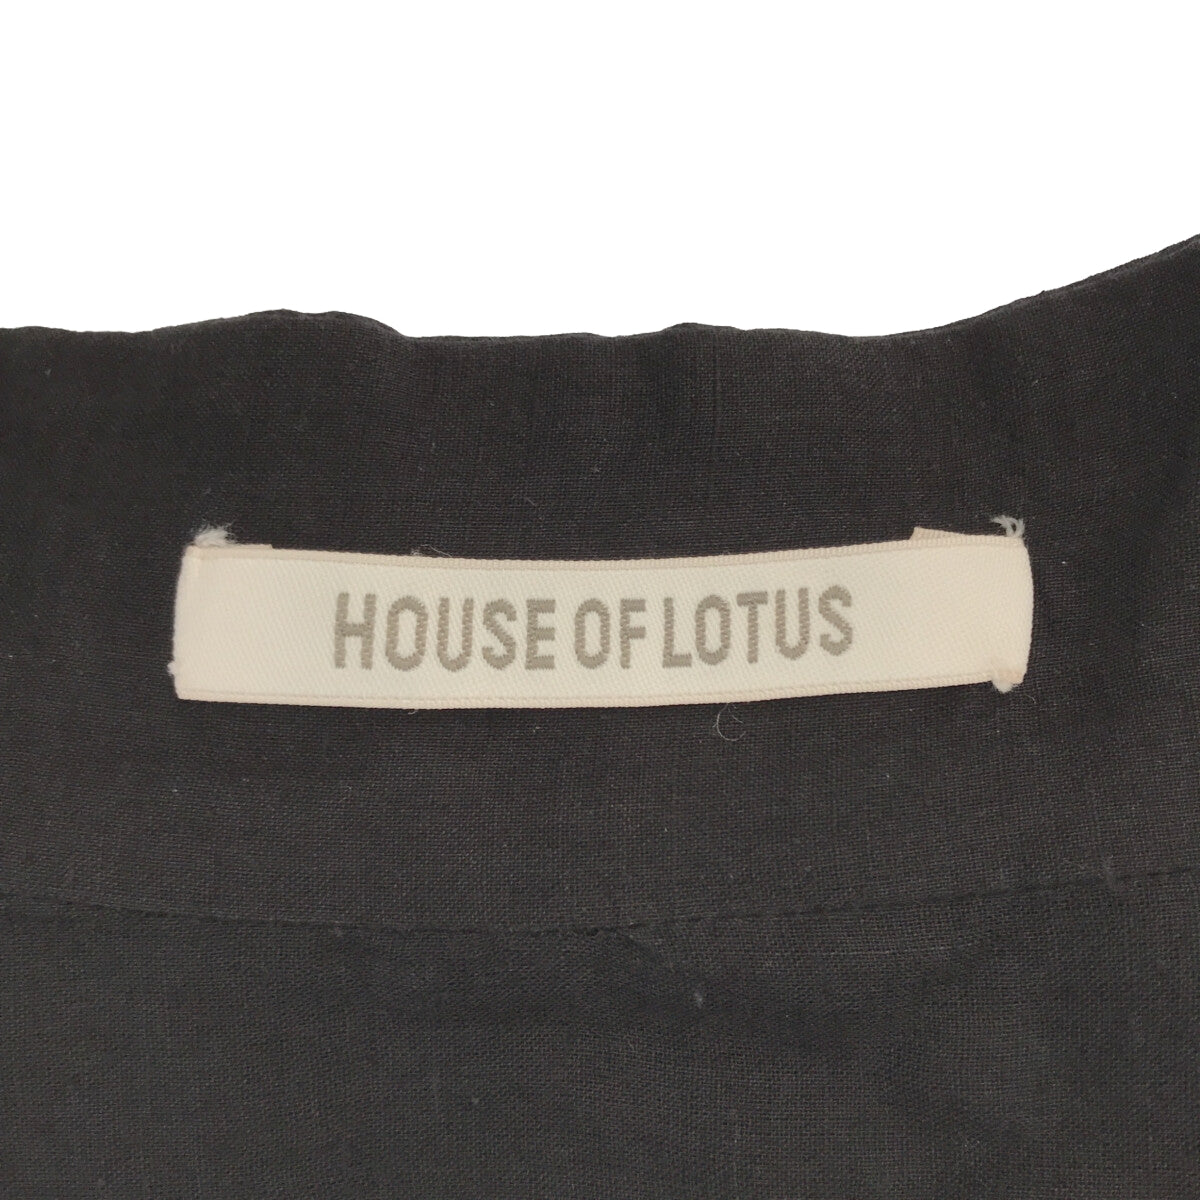 HOUSE OF LOTUS / ハウスオブロータス | カディギャザードレス | M